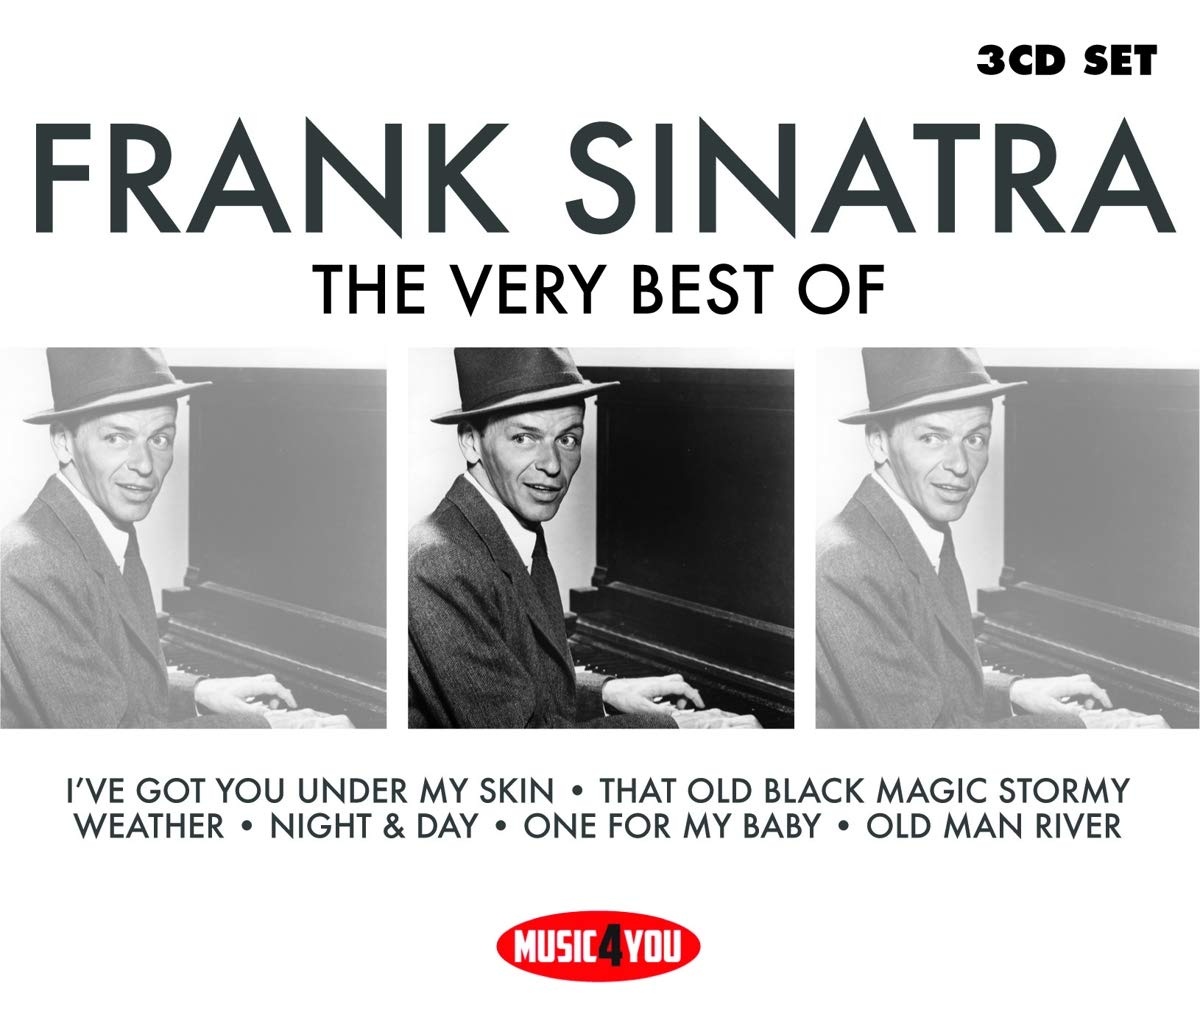 Фрэнк Синатра best of the best. Frank Sinatra old. The best of Frank Sinatra альбом. Sinatra диск. Песня фрэнка синатры на русском языке